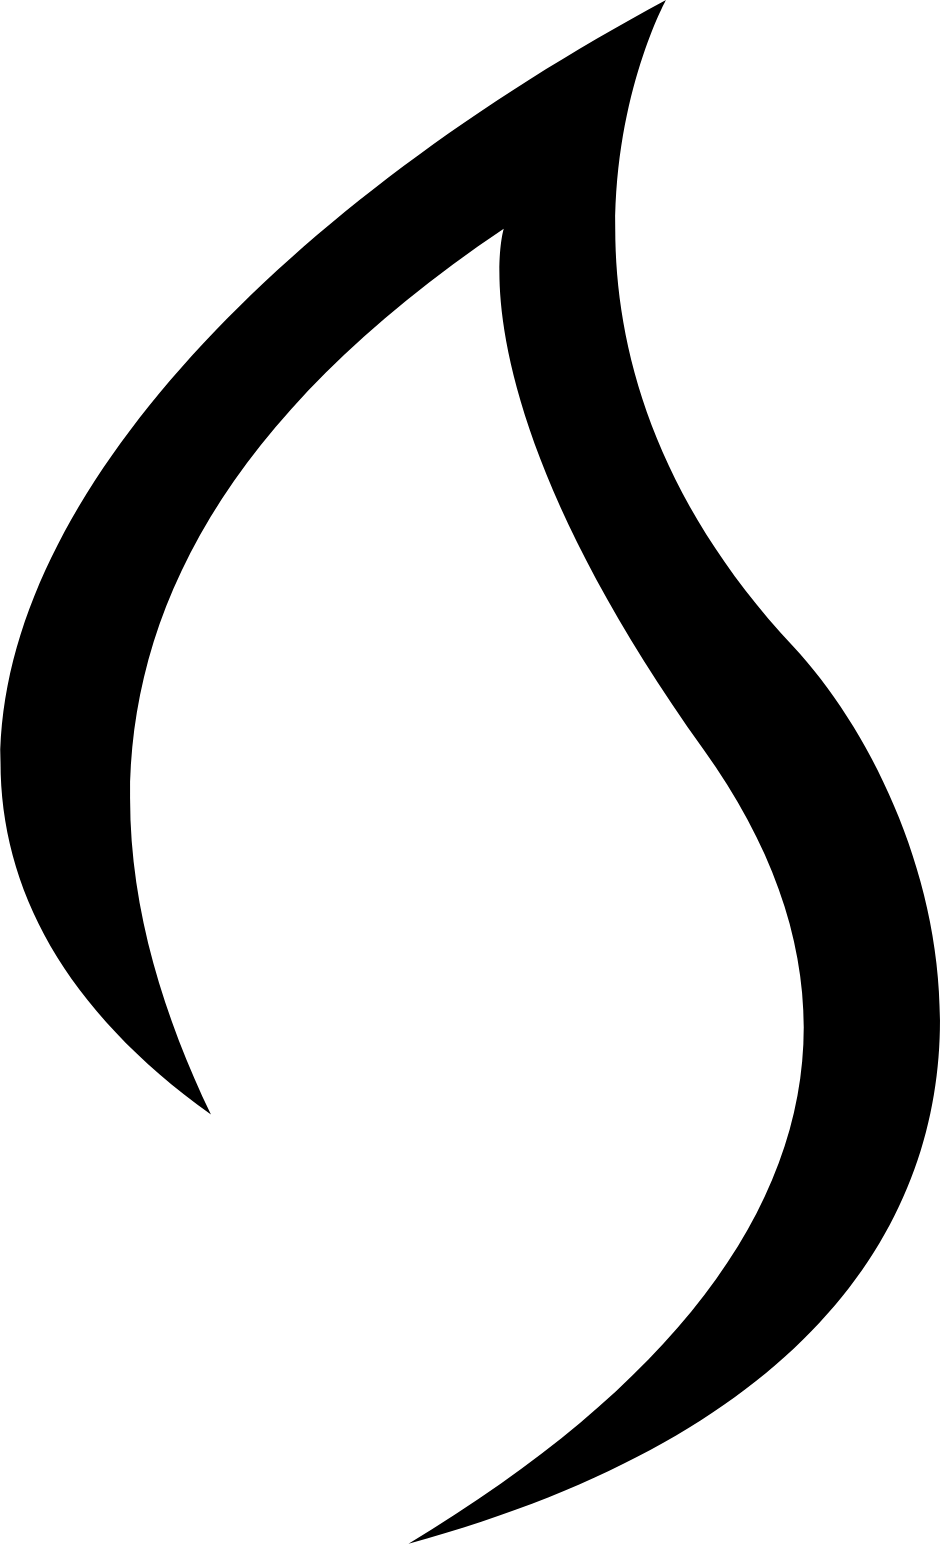 HomeBiogas logo (PNG transparent)